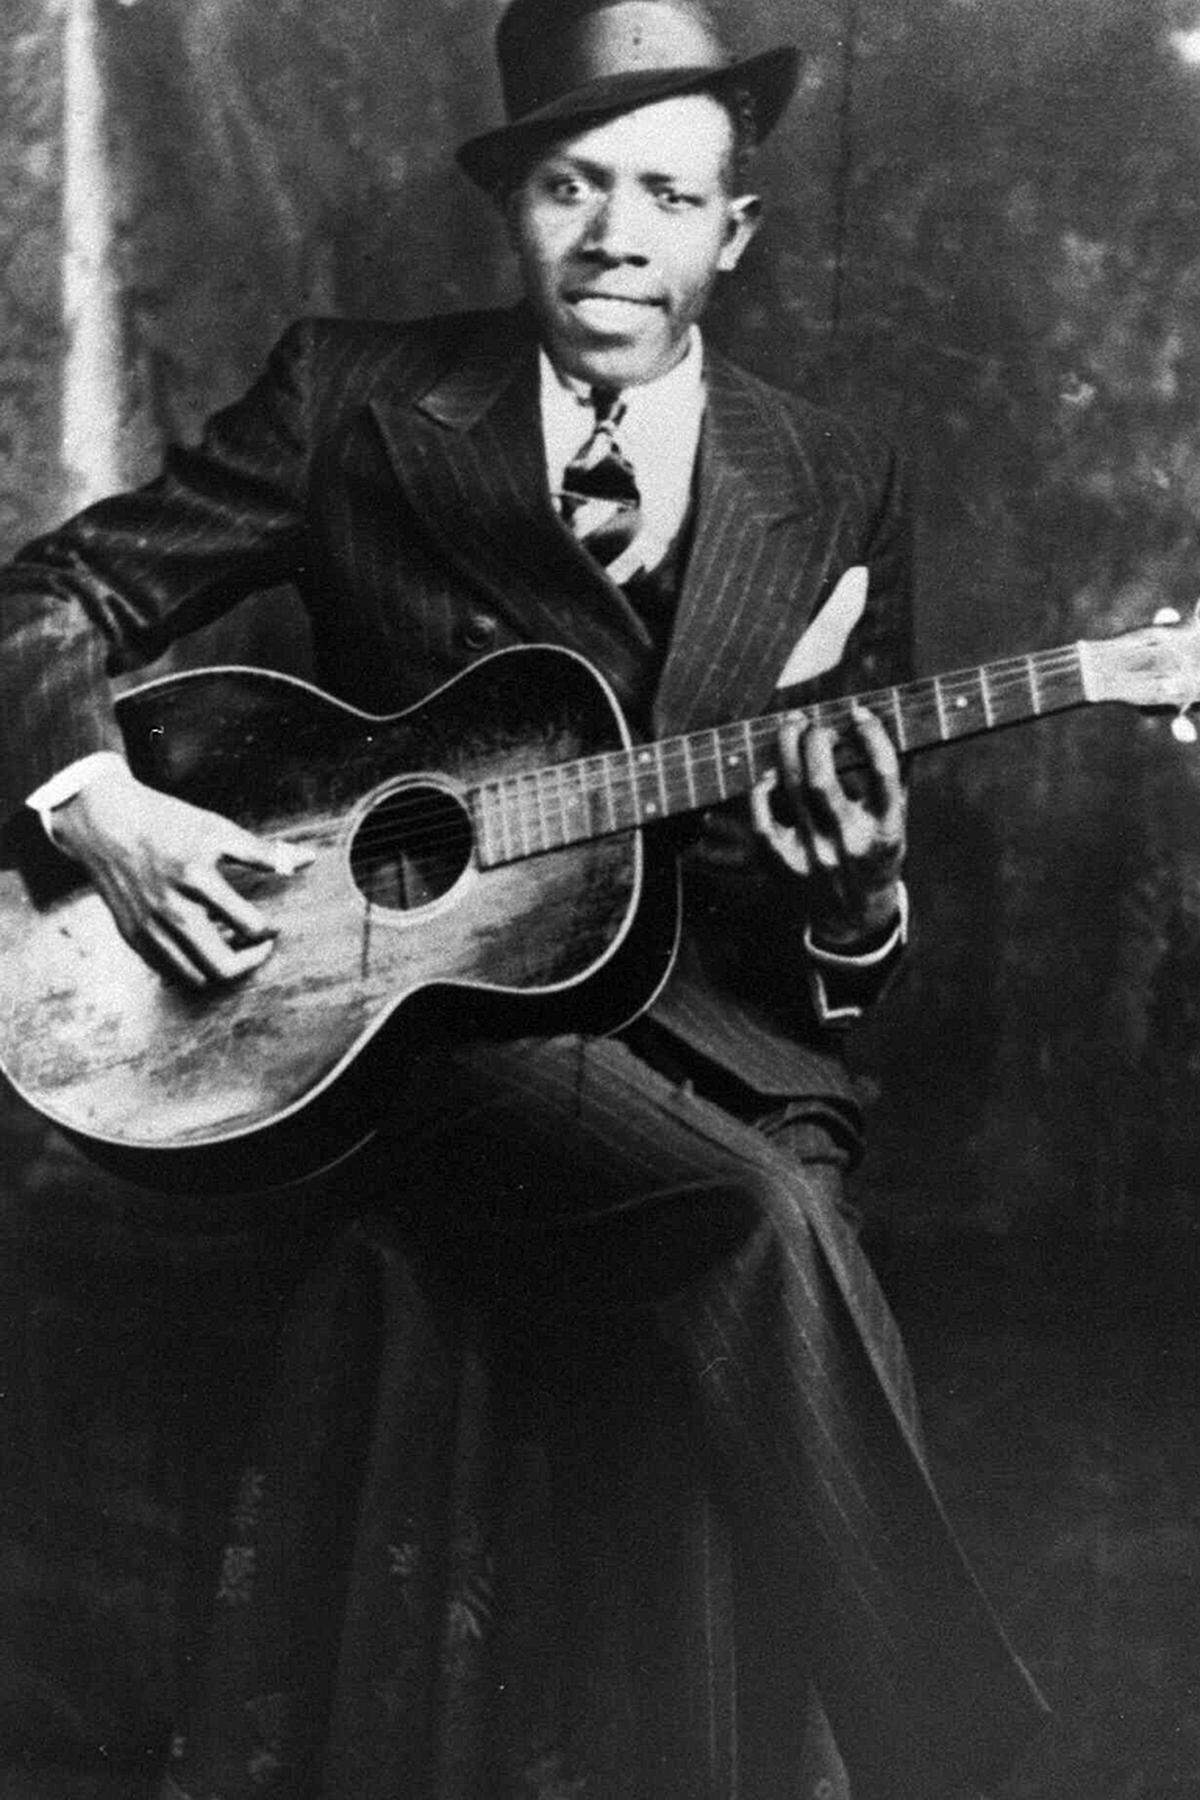 Der 1911 in Hazlehurst, Mississippi geborene Robert Johnson gilt als einer einflussreichsten Blues-Musiker. Jimi Hendrix und Bob Dylan gaben Johnson als Inspirationsquelle an. Keith Richards nannte ihn "den größten Folk-Blues-Gitarristen, der jemals gelebt hat".Der "King of the Delta Blues" starb 1938 an den Spätfolgen der Geschlechtskrankheit Syphilis.Seine Songs erlangten erst nach seinem Tod große Bekanntheit, so zum Beispiel "Sweet Home Chicago", das unter anderem von den Blues Brothers gecovert wurde.